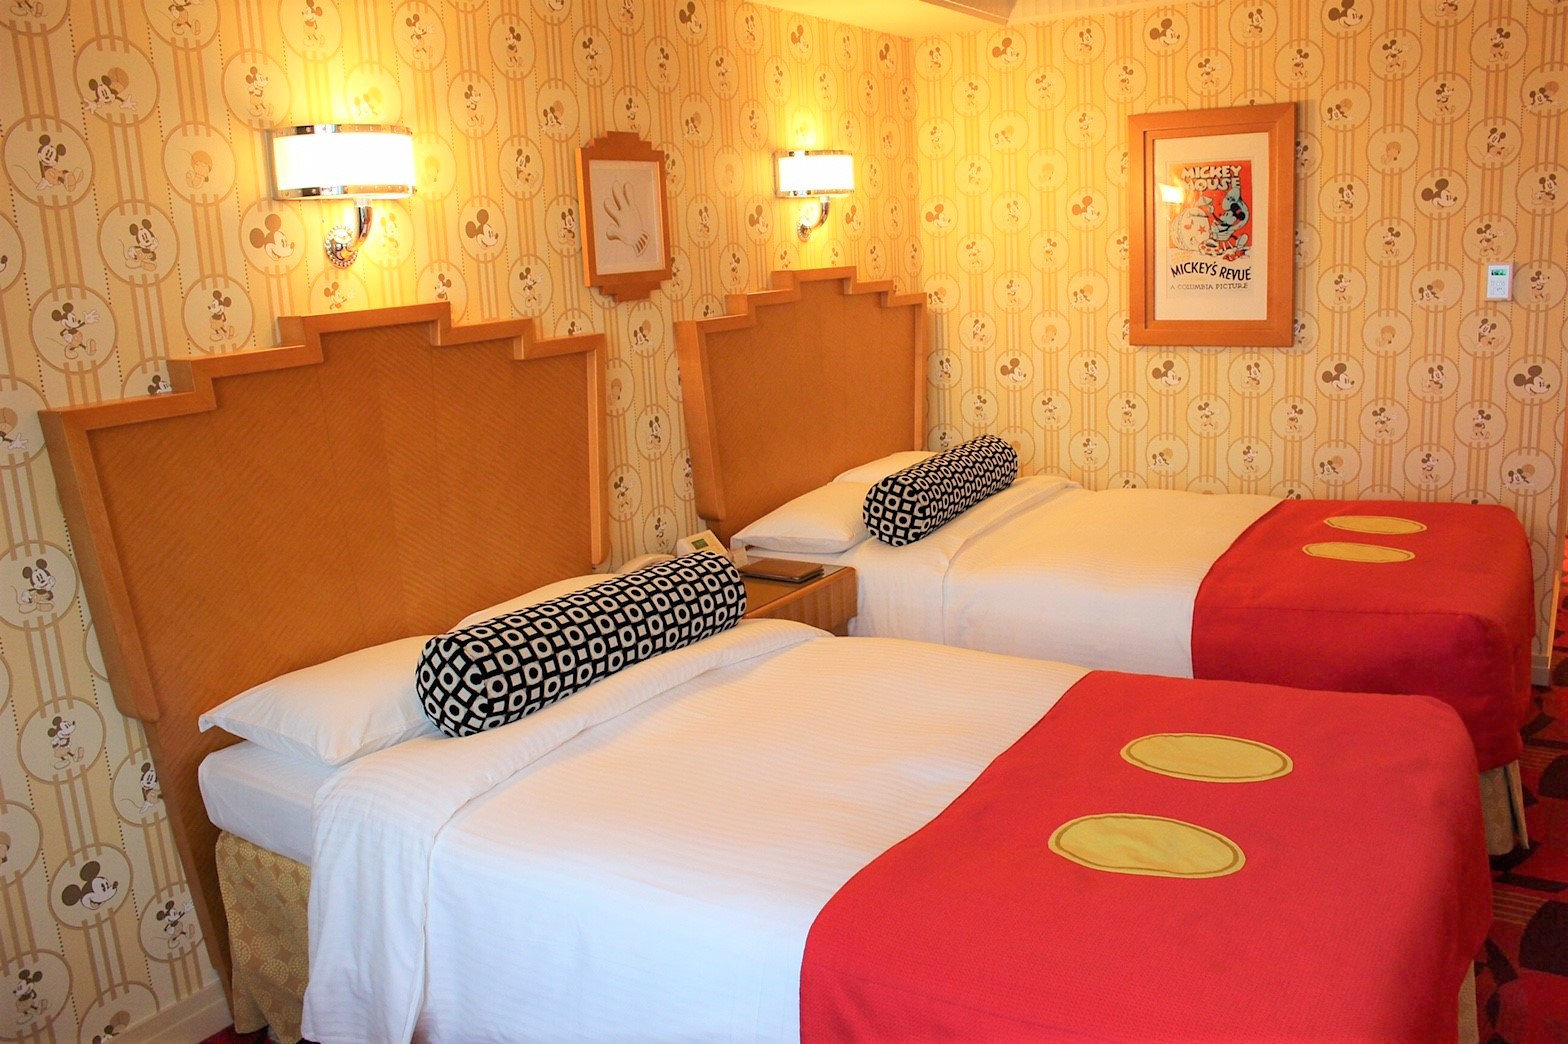 必見 ディズニー周辺ホテルに格安で泊まる方法8選 3000円台泊まる方法とは